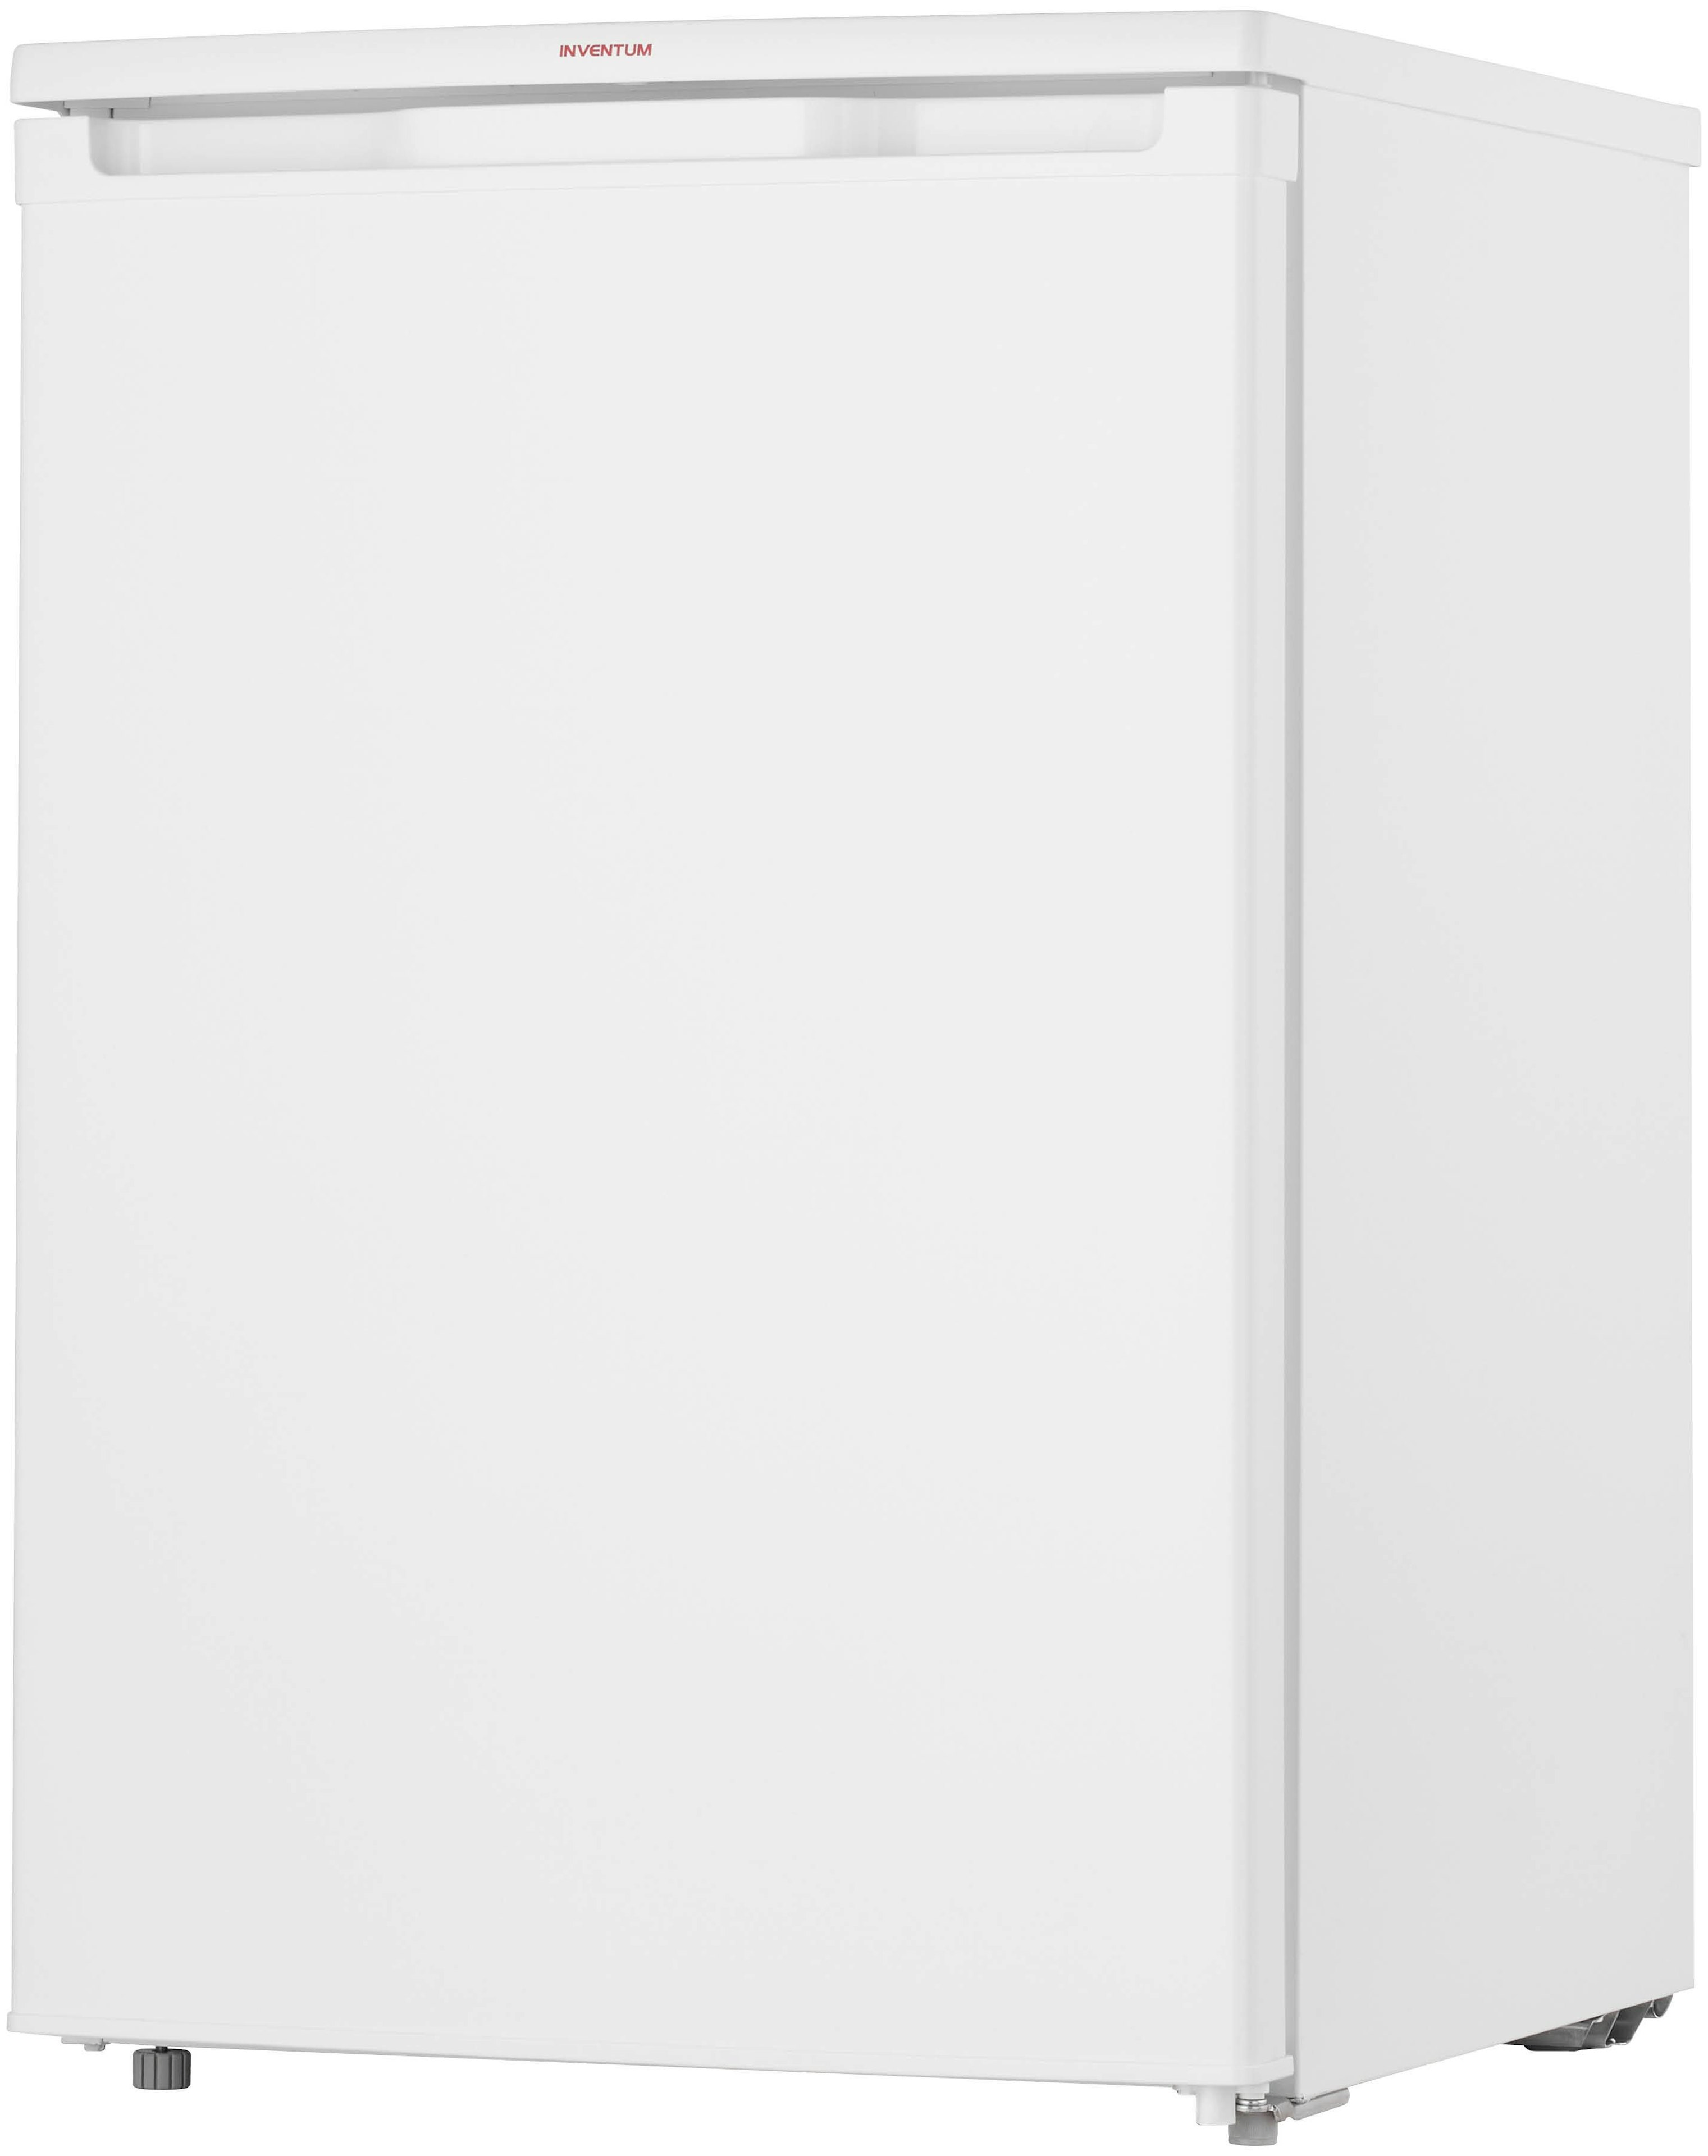 Inventum KV550 vrijstaand koelkast afbeelding 5